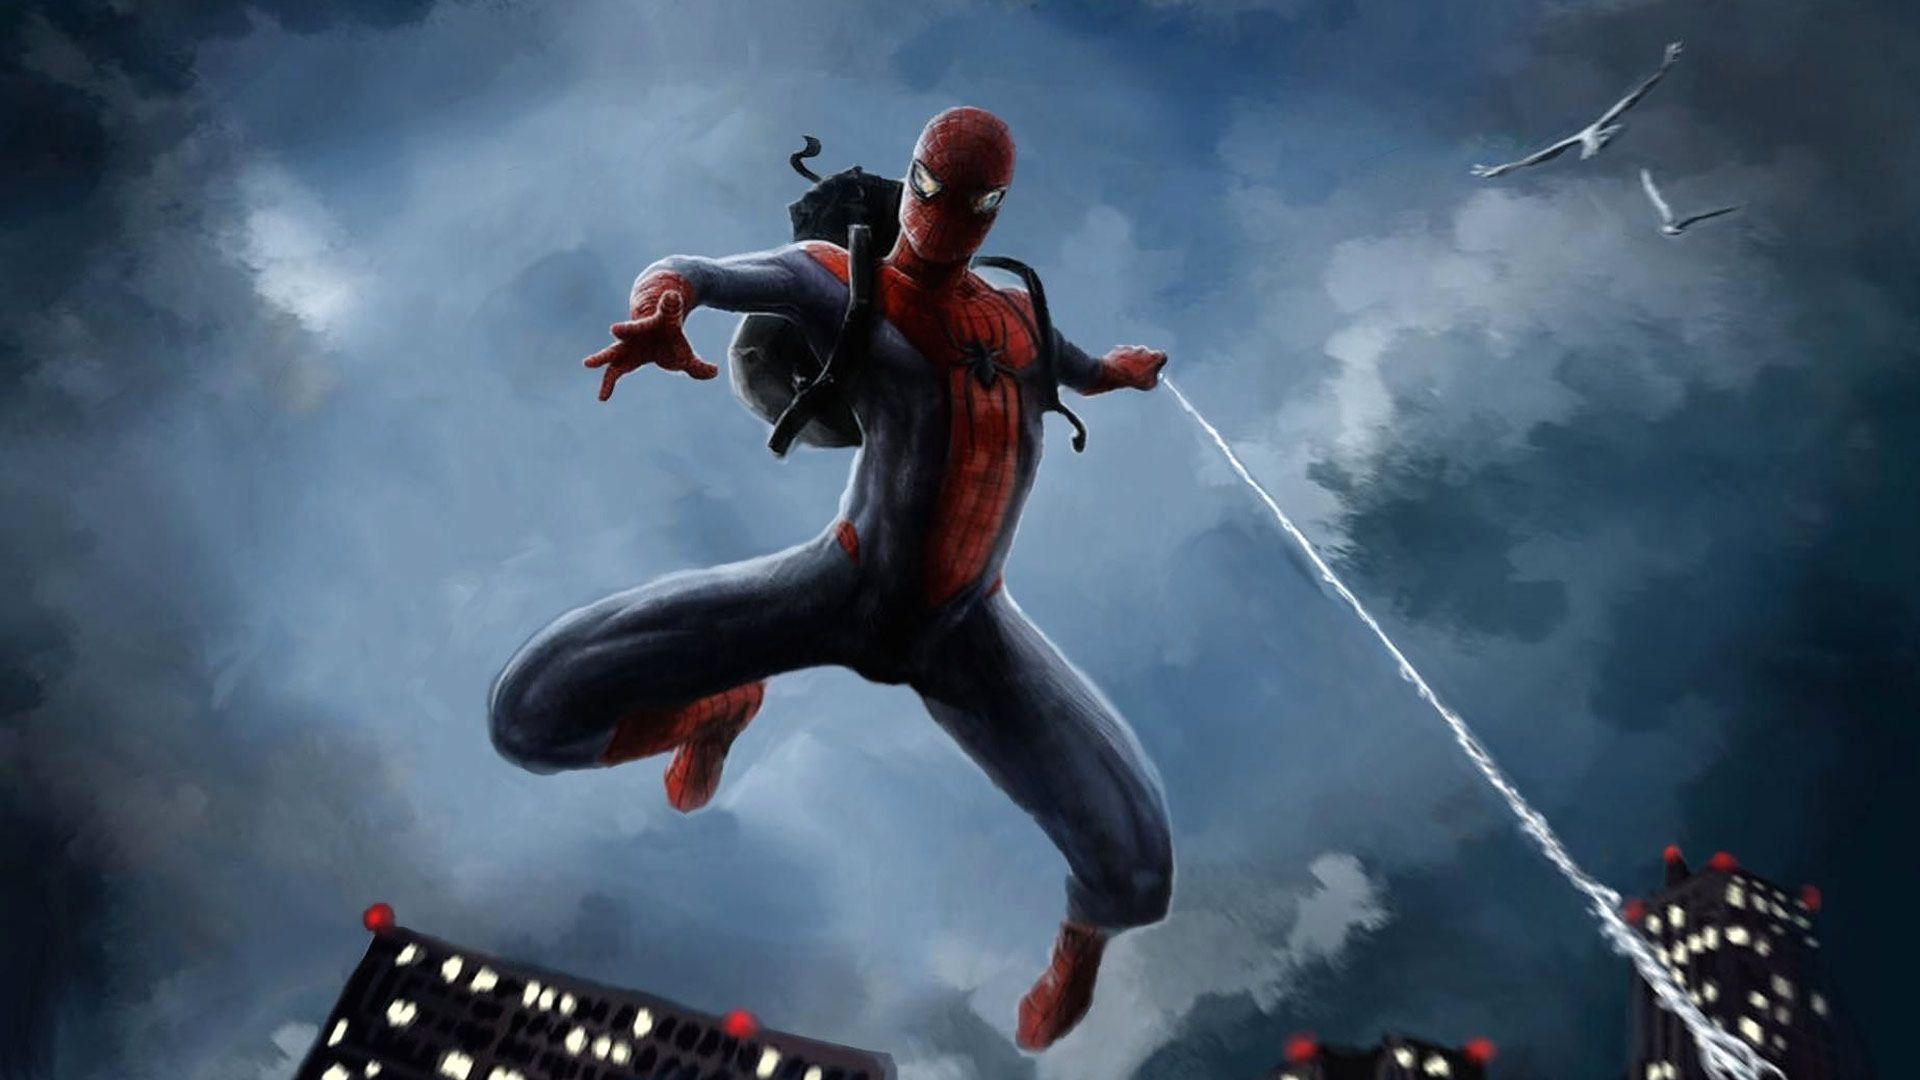 Captain America civil war spiderman wallpapers – Free full hd